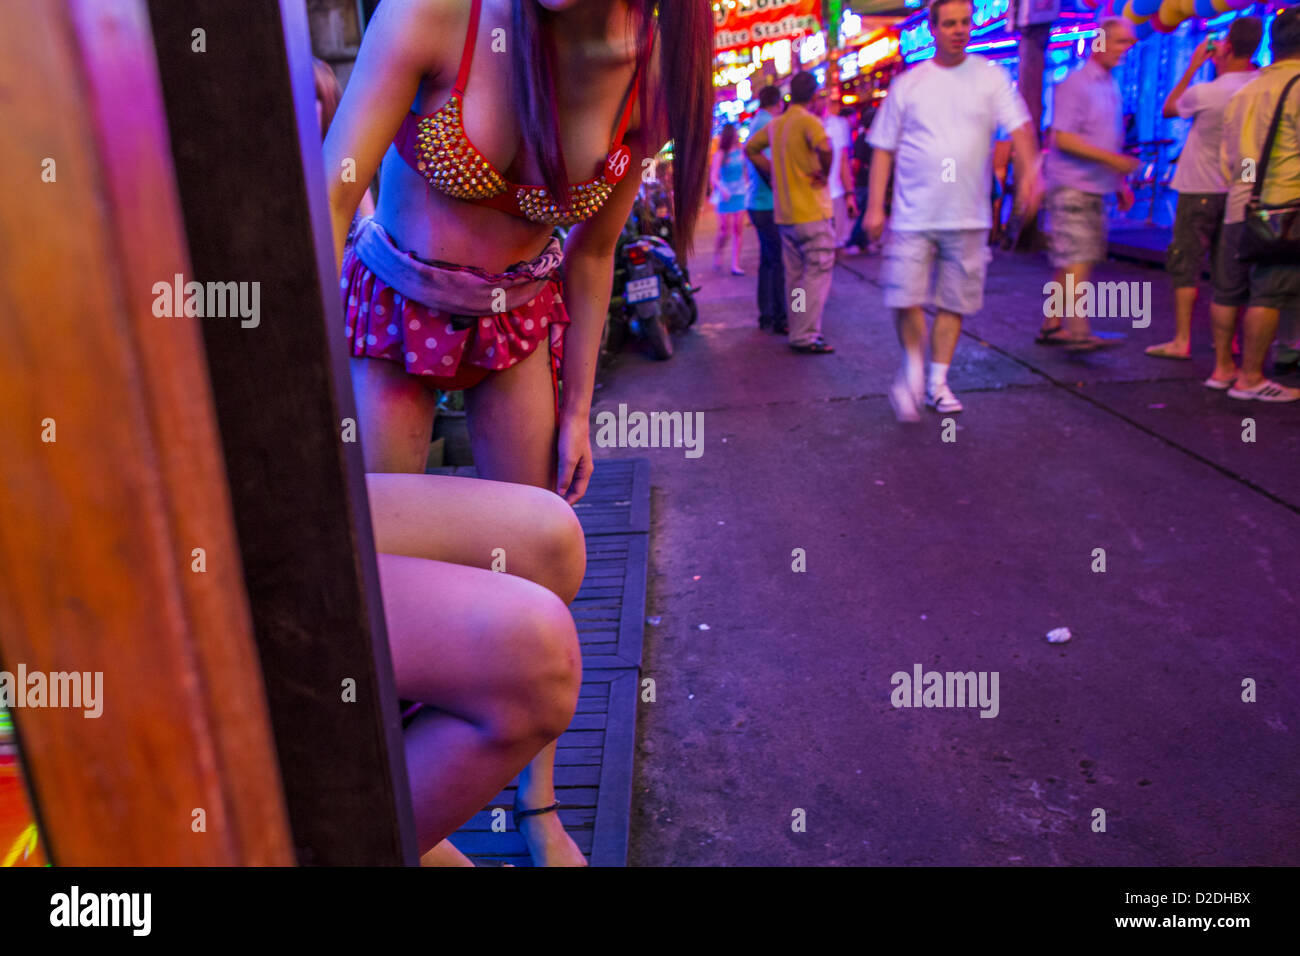 Enero 12, 2013 - Bangkok, Tailandia - Ladyboy (transexuales) artistas tratan de atraer a los clientes a las cacatúas Soi Cowboy Bar en el barrio rojo de Bangkok. En Tailandia, los ladyboys son llamados kathoey. Muchos trabajan en la industria del entretenimiento y la vida nocturna de los sectores de la economía tailandesa. La prostitución es ilegal en Tailandia, aunque en la práctica es tolerada y parcialmente regulado. La prostitución se practica abiertamente en todo el país. El número de prostitutas es difícil de determinar, las estimaciones varían ampliamente. Desde la Guerra de Vietnam, Tailandia ha adquirido notoriedad internacional entre los viajeros de Foto de stock